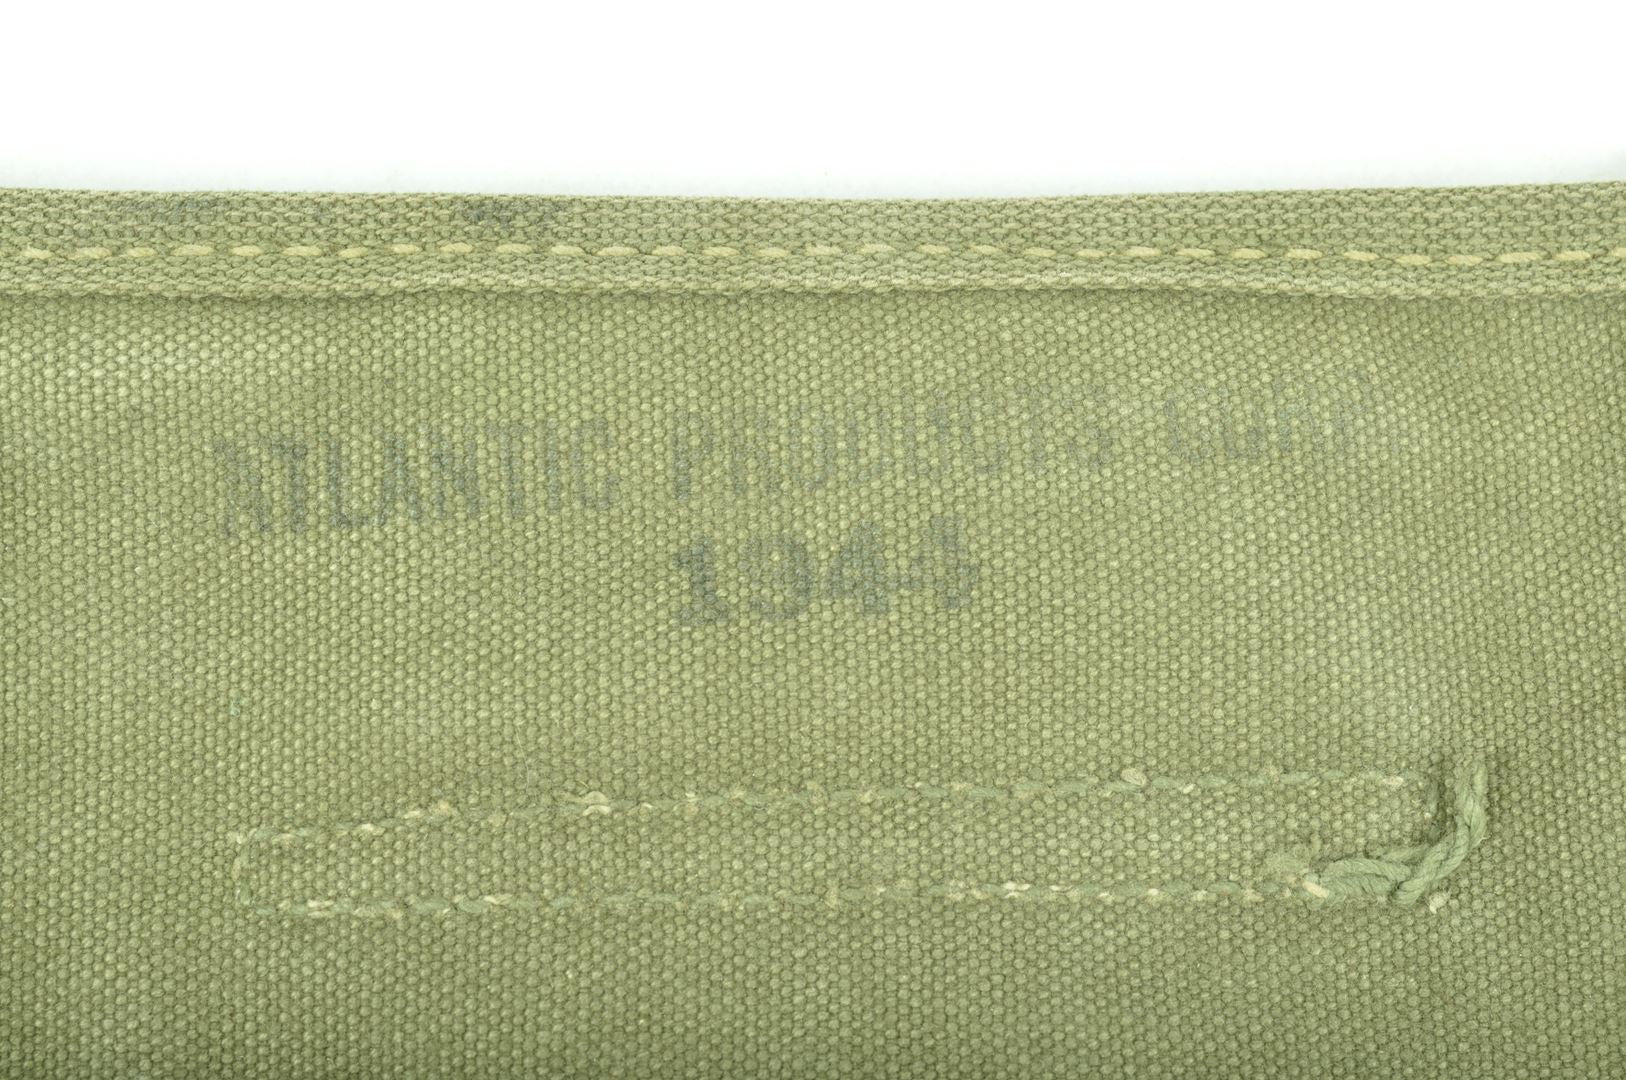 Musette M36 datée 1944 / Nominative